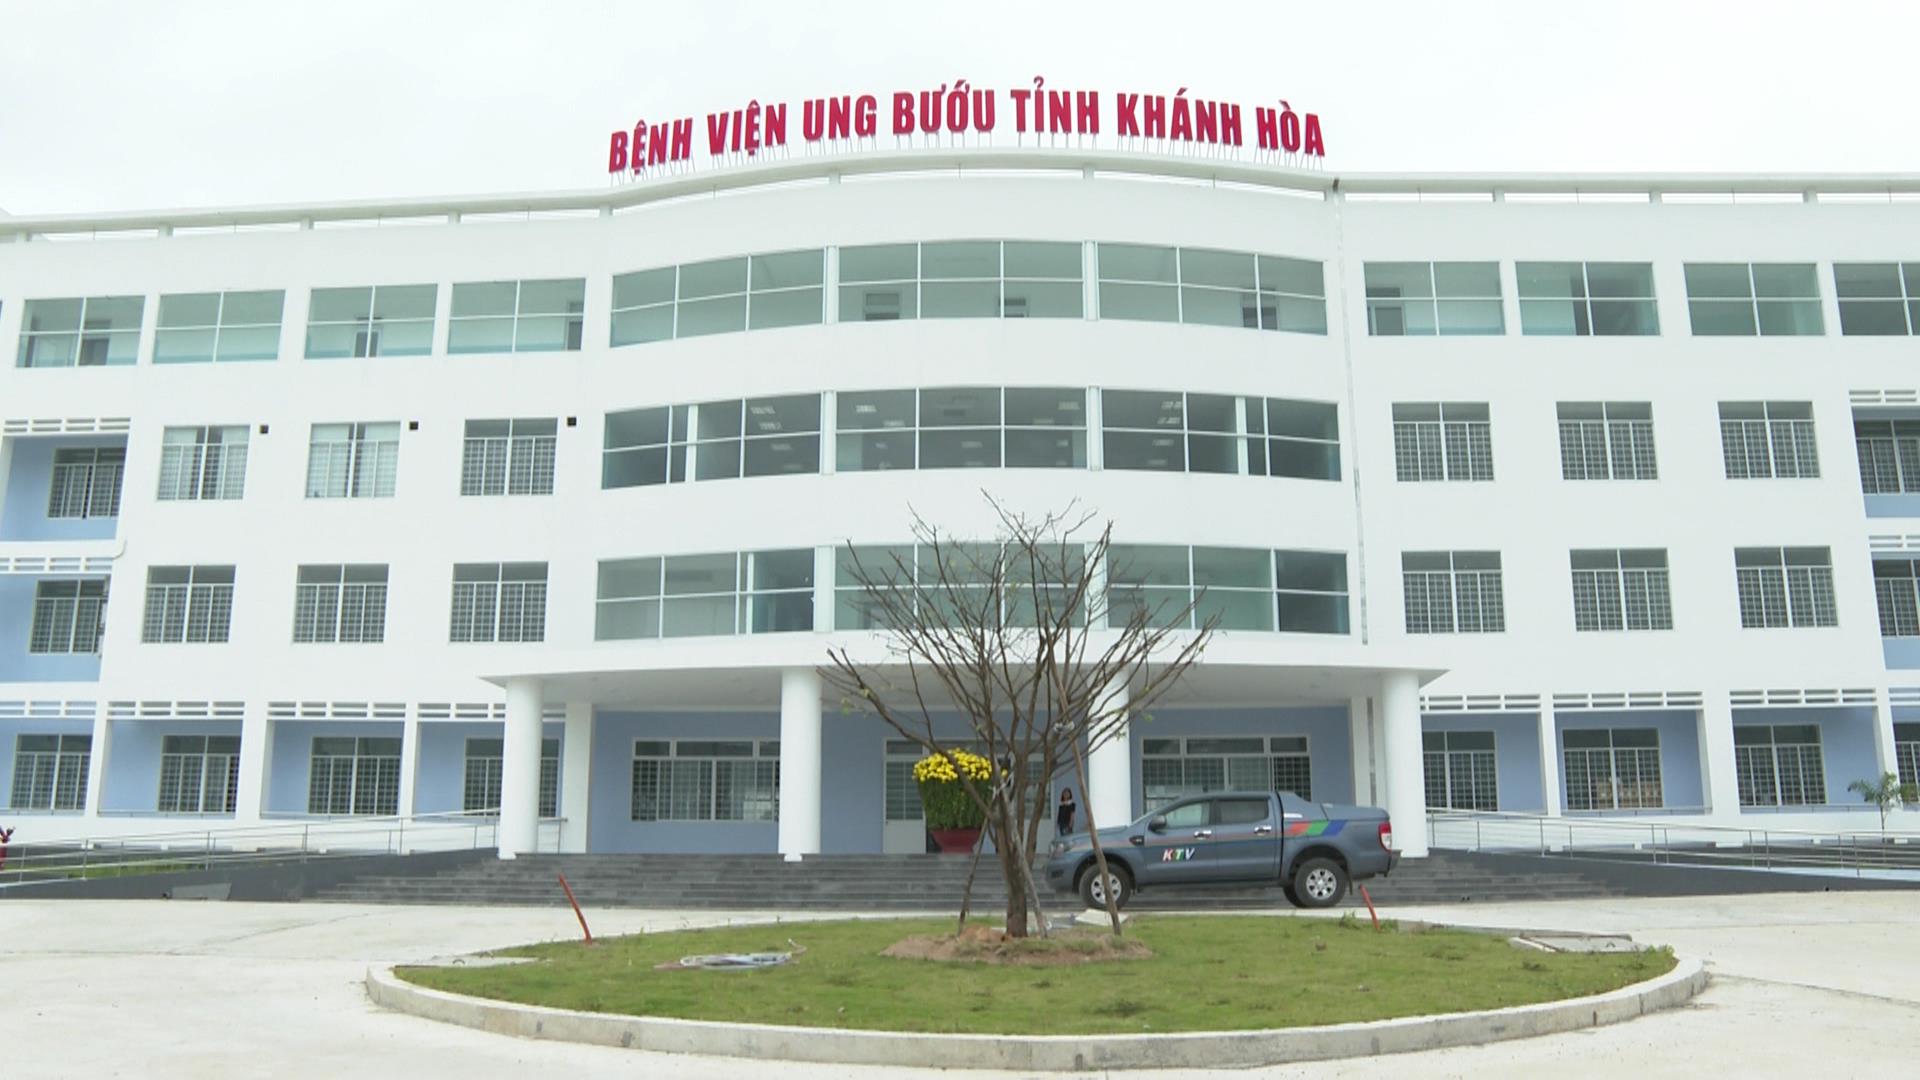 Bệnh viện Nha Trang Ung bướu